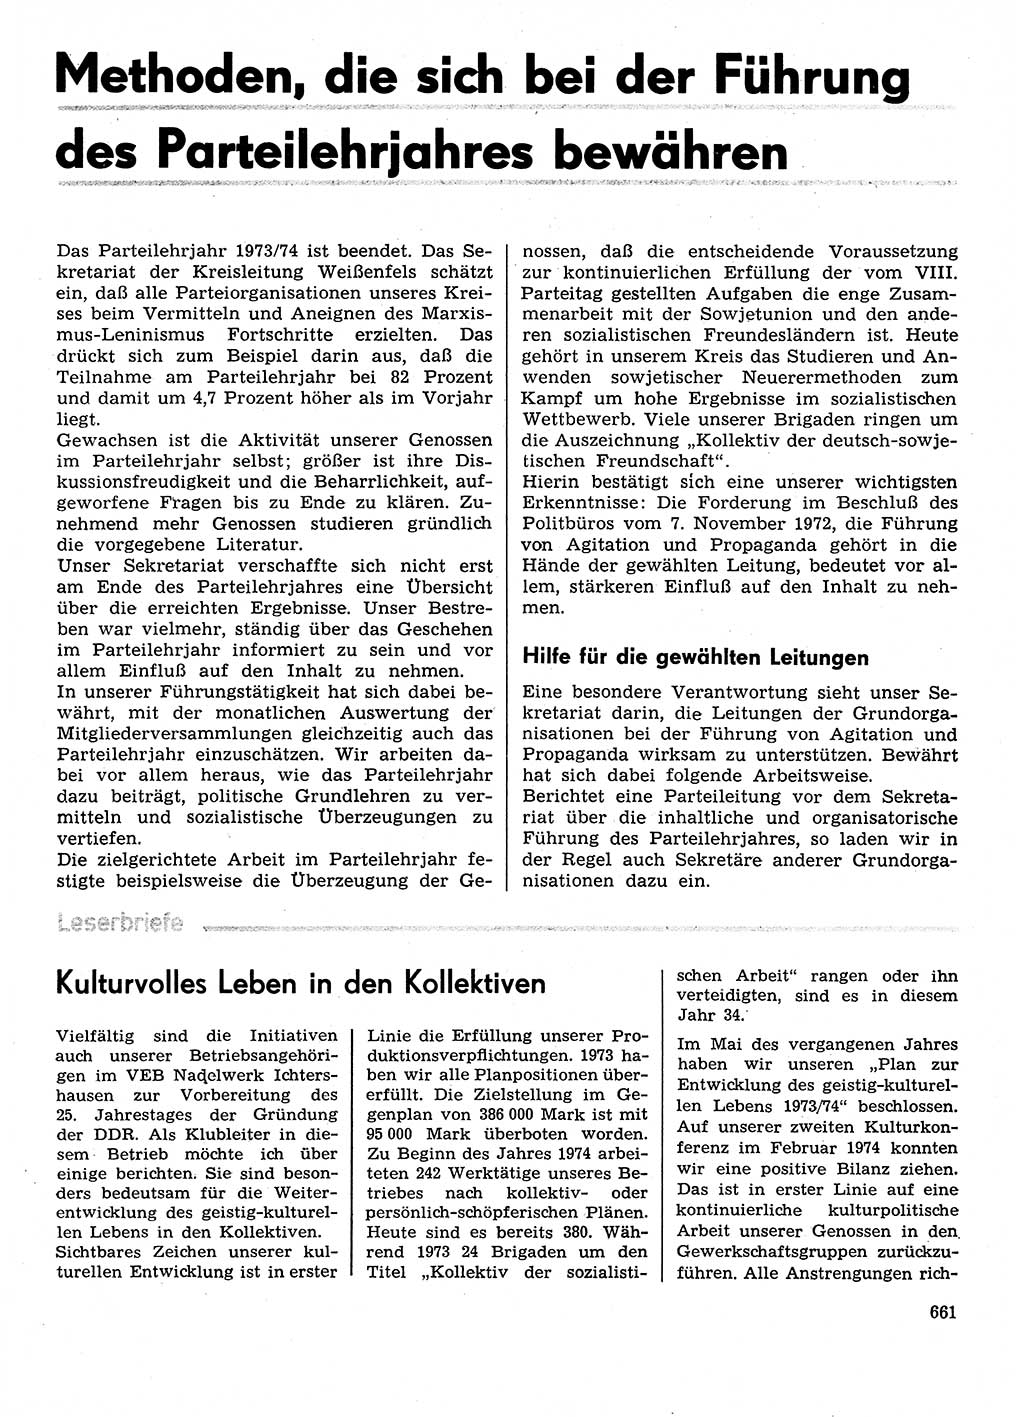 Neuer Weg (NW), Organ des Zentralkomitees (ZK) der SED (Sozialistische Einheitspartei Deutschlands) für Fragen des Parteilebens, 29. Jahrgang [Deutsche Demokratische Republik (DDR)] 1974, Seite 661 (NW ZK SED DDR 1974, S. 661)